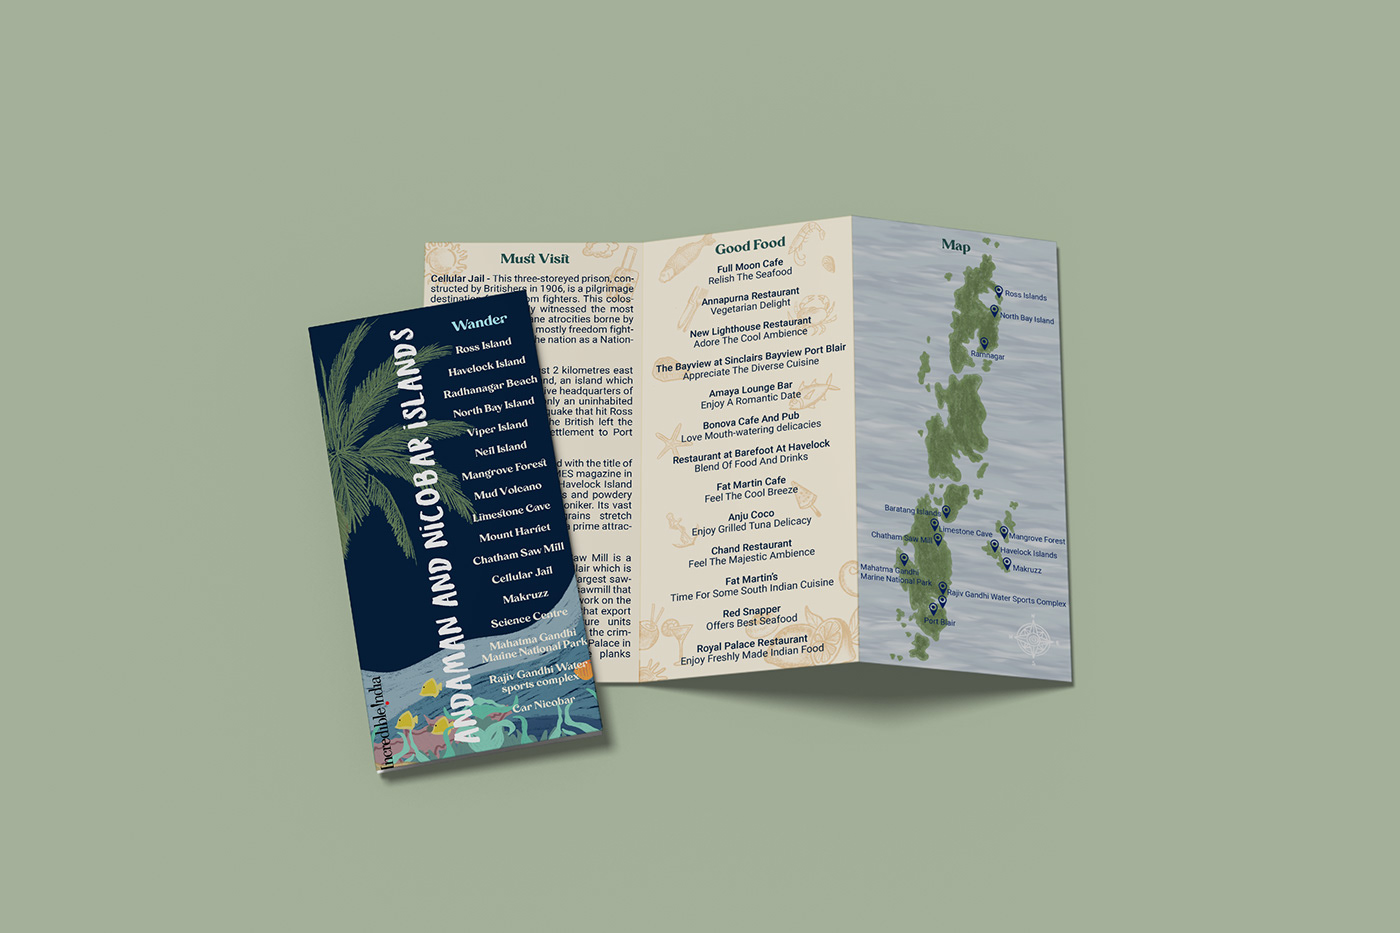 andaman and nicobar islands tourism brochure pdf